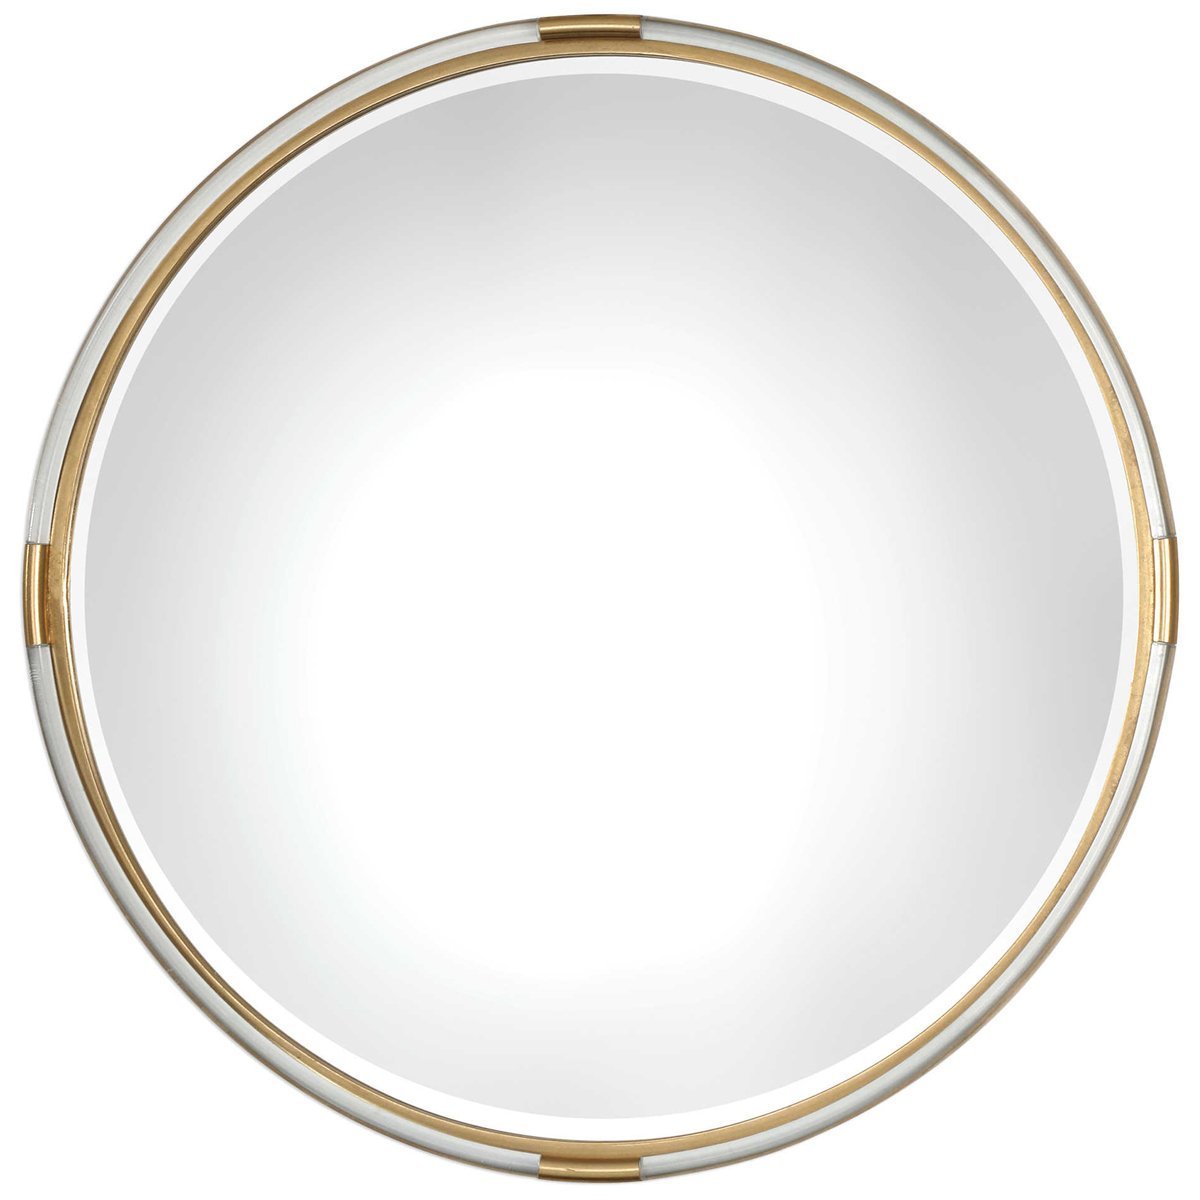 Uttermost Mackai Round Gold Mirror